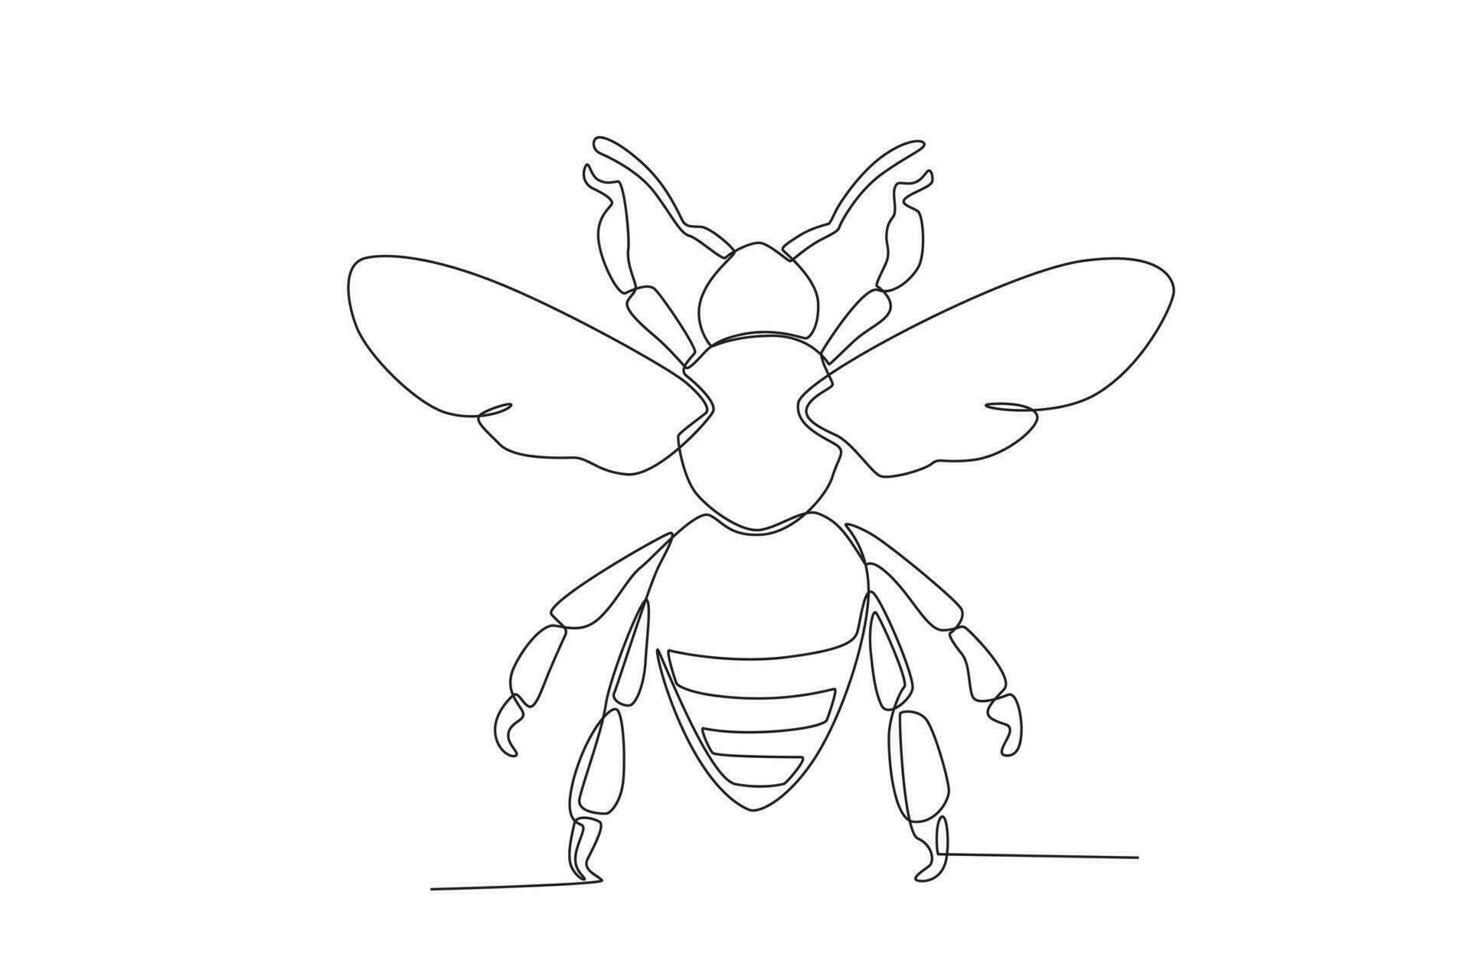 uma solteiro contínuo linha desenhando do a abelha para a da fazenda logotipo identidade. solteiro linha desenhando gráfico Projeto vetor ilustração